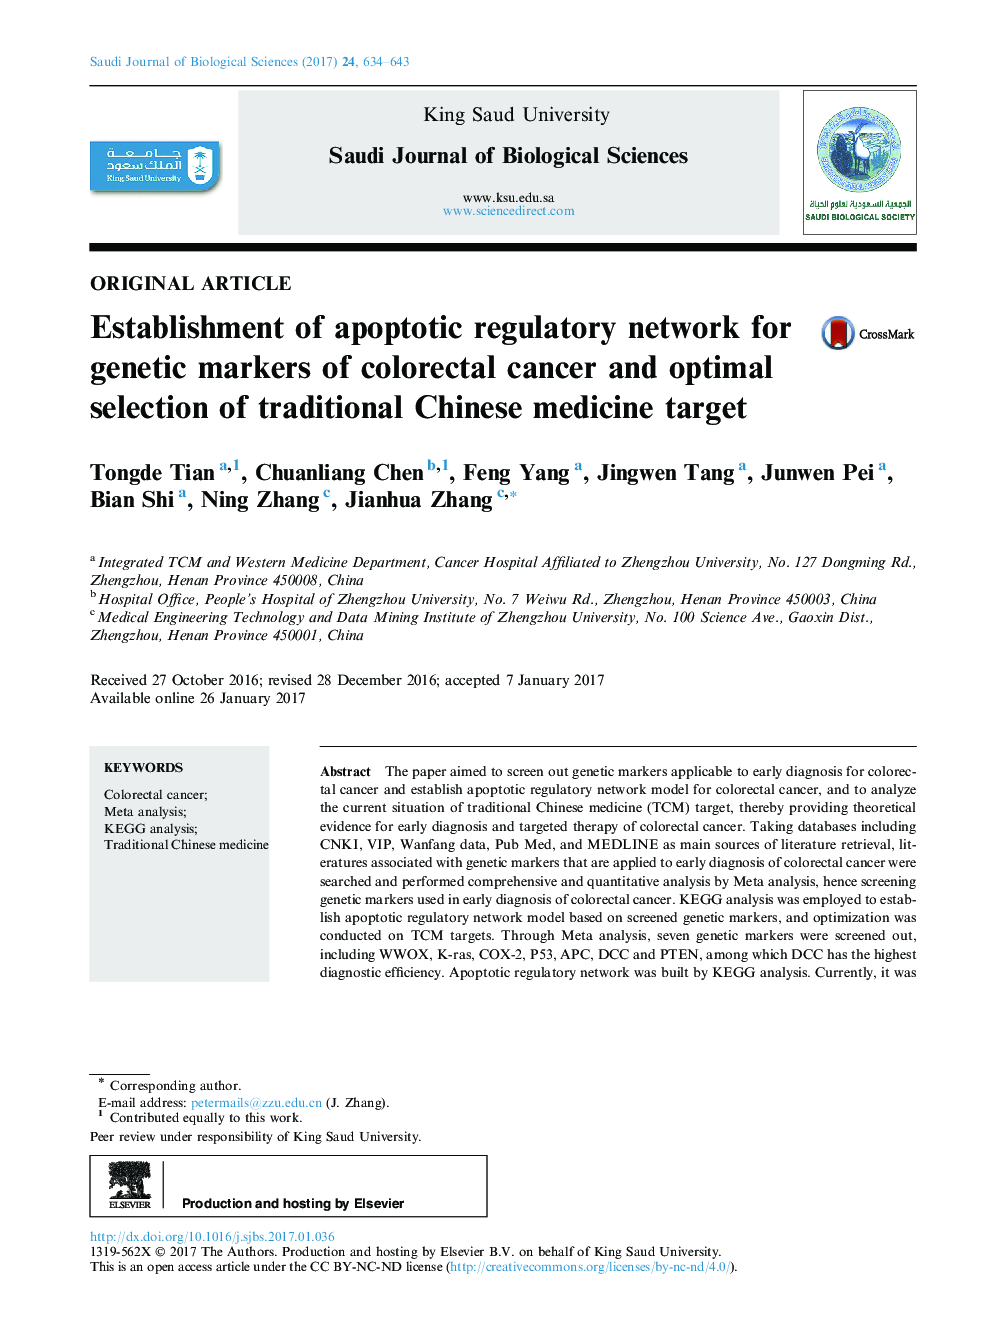 مقاله اصلی راه اندازی شبکه نظارتی آپوپتوز برای نشانگرهای ژنتیکی سرطان کولورکتال و انتخاب بهینه هدف پزشکی سنتی چینی 